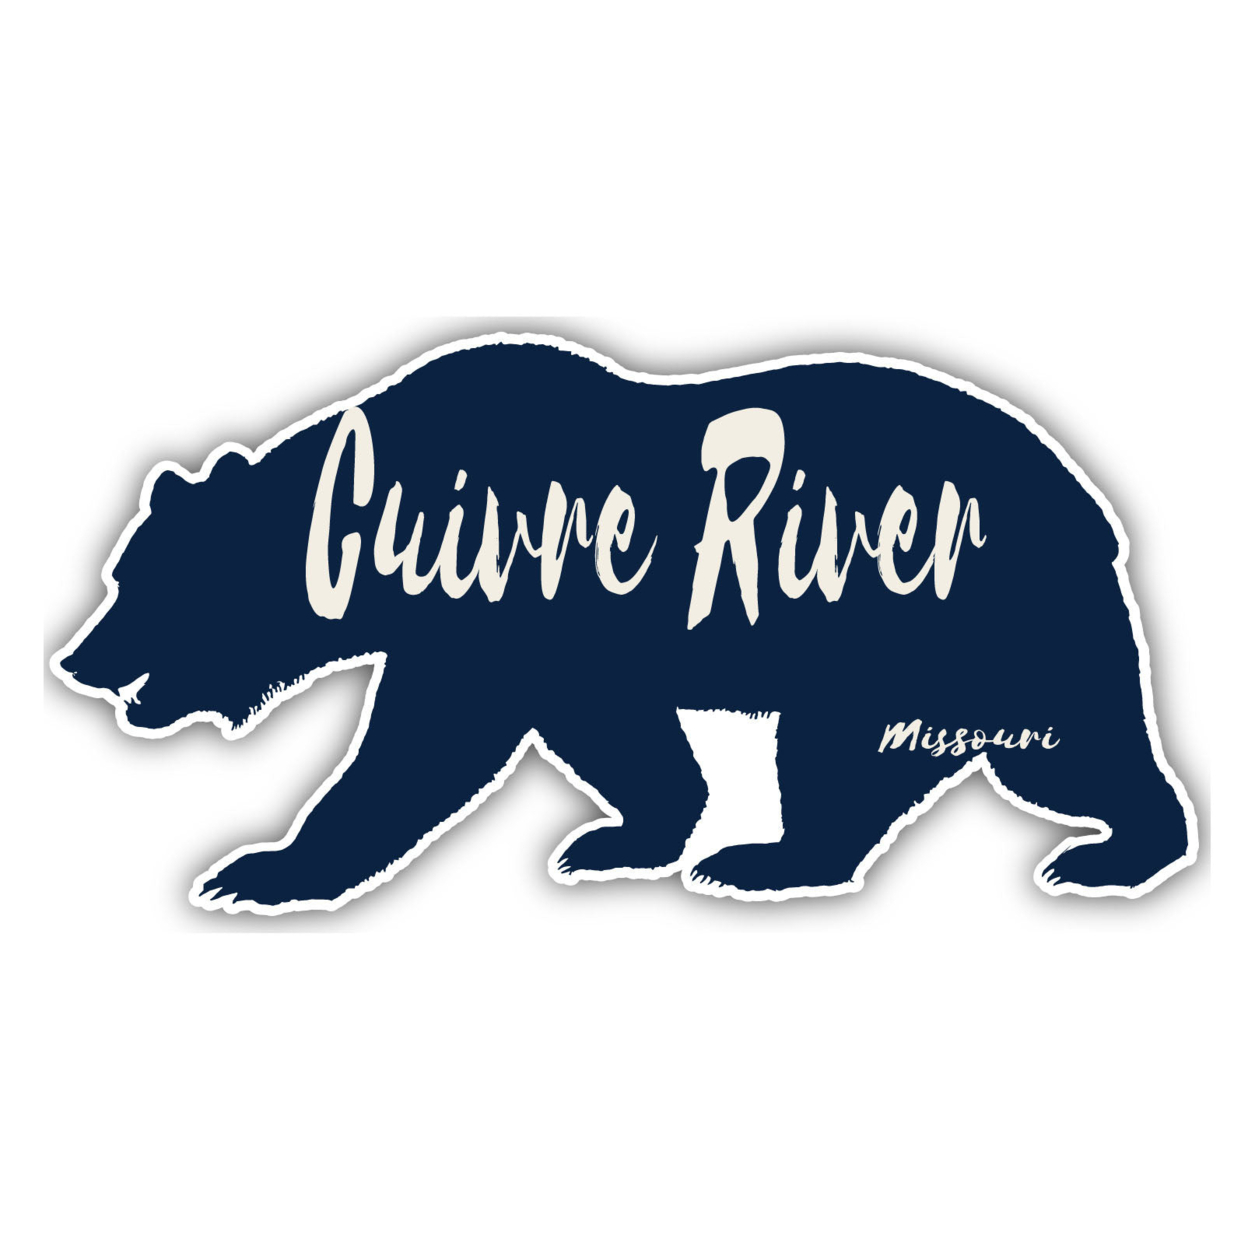 Cuivre River Missouri Souvenir Decorative Stickers (Choose Theme And Size) - Single Unit, 10-Inch, Bear